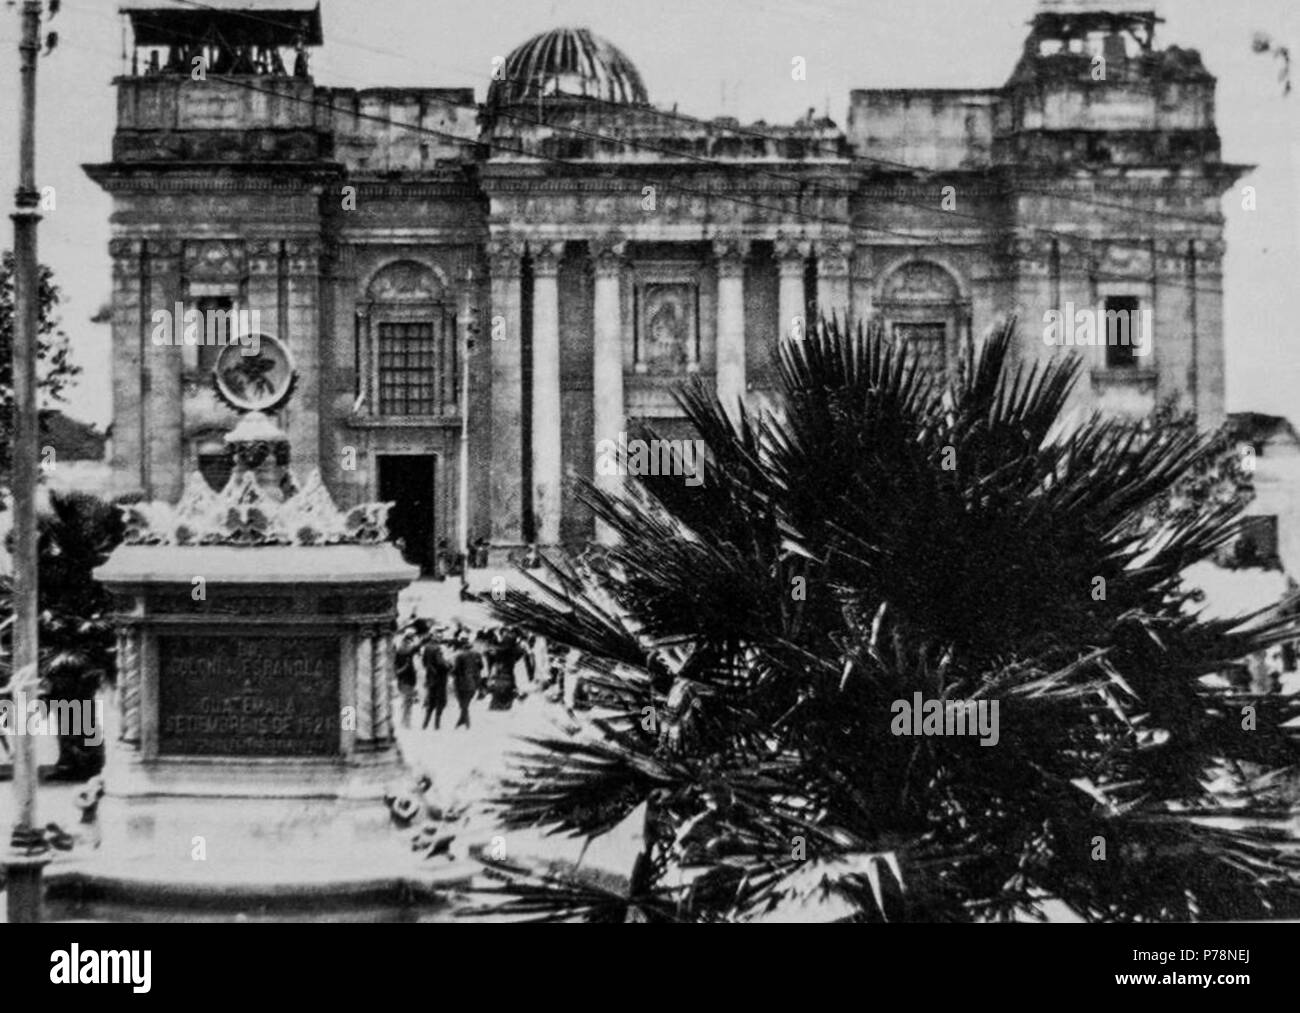 Español: Catedral de la Ciudad de Guatemala en 1926. Nótese que la iglesia todavía no ha sido recontruida del todo luego de los terremotos de 1917-18. 1926 4 Catedralguatemala1926 Stock Photo